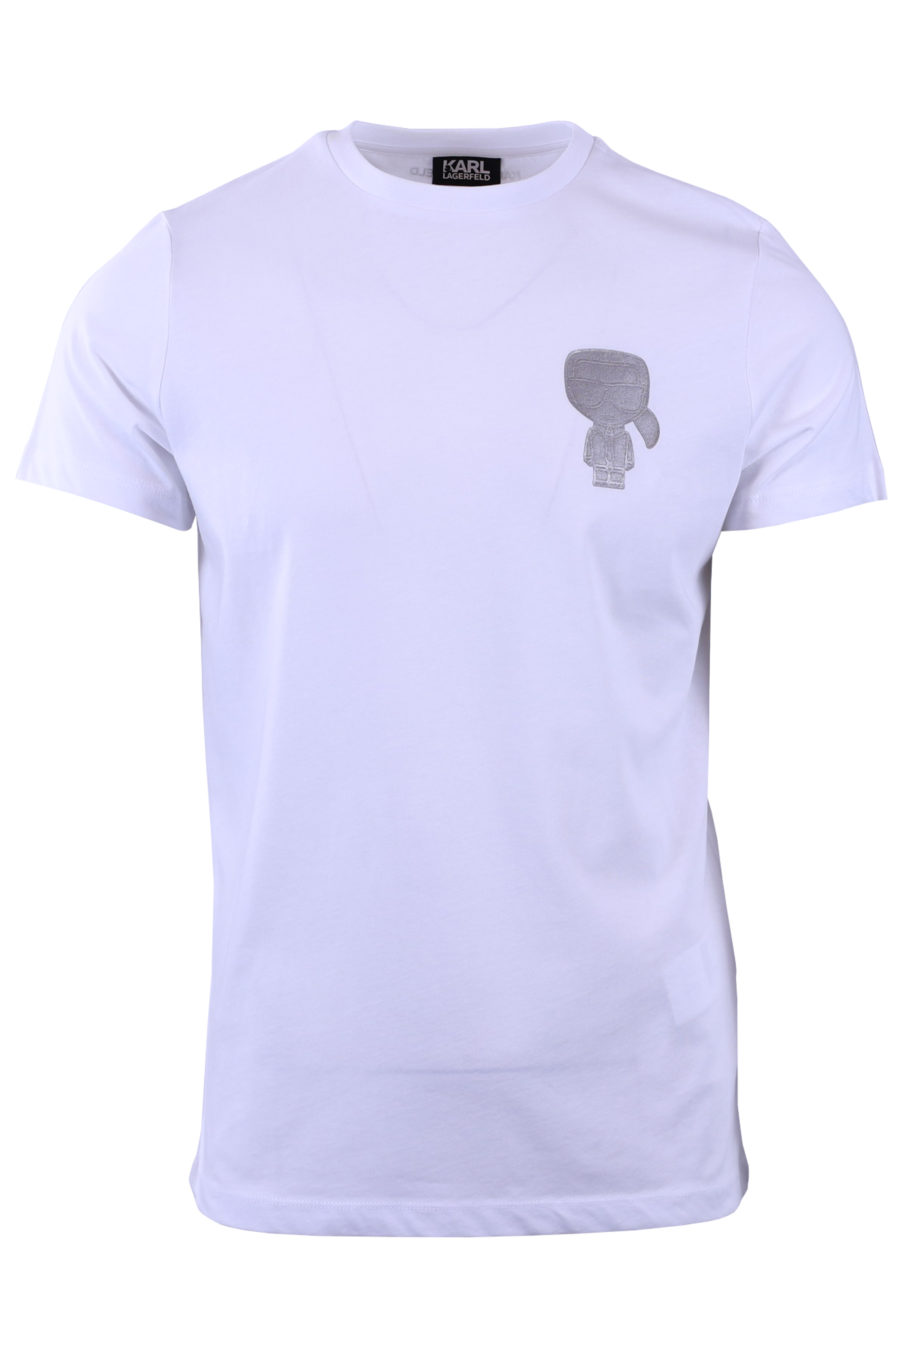 T-shirt blanc avec profil Karl argenté - b8454a11d5a3da5c2af3175a9cfb10c67c77e02b